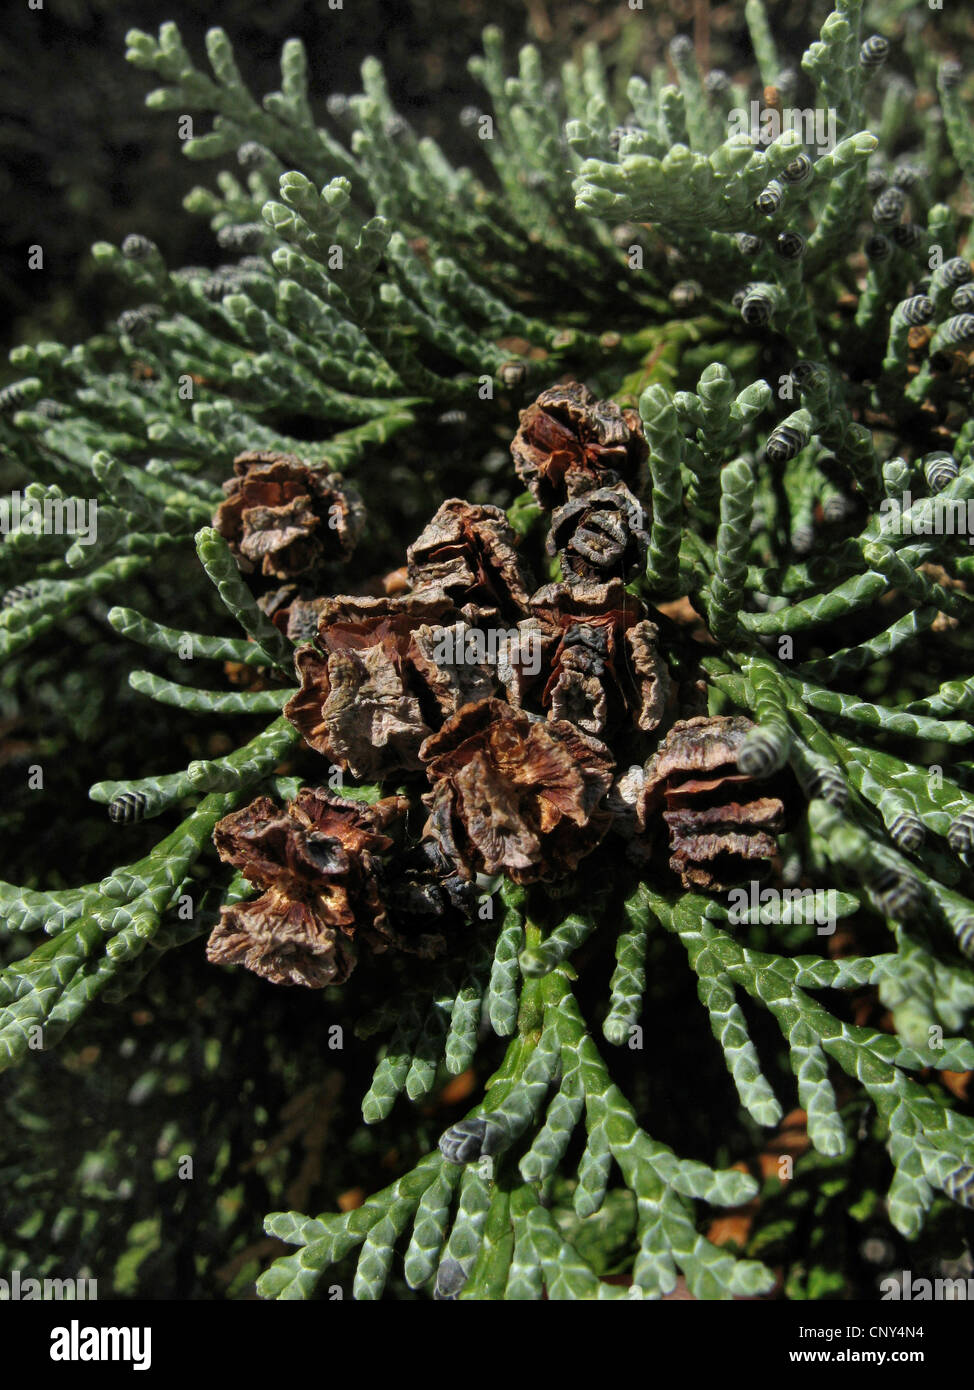 Lawson cypress, Port Orford cedar (Chamaecyparis lawsoniana), cones on a branch Stock Photo